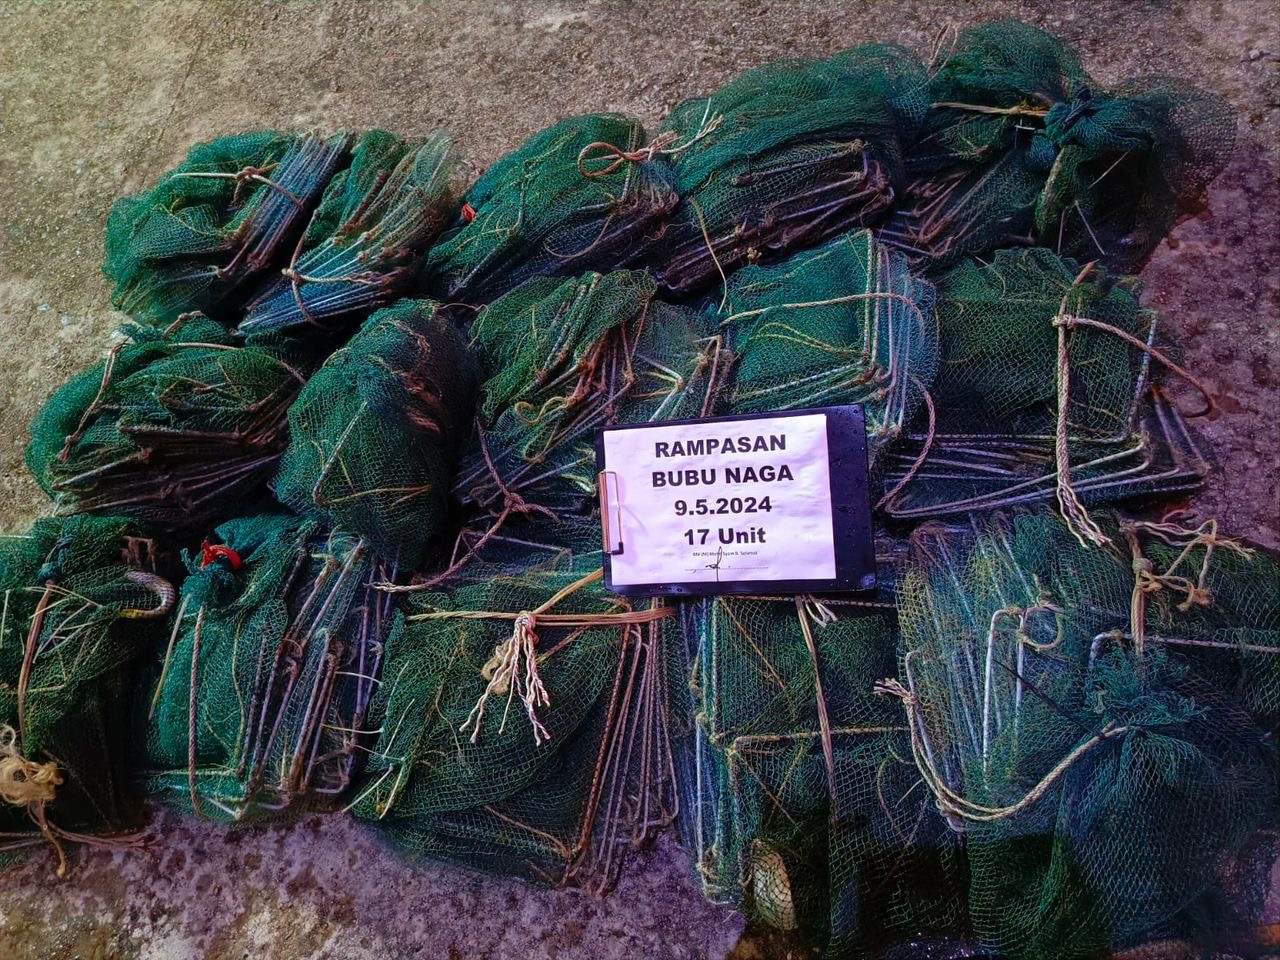 Maritim Malaysia rampas 45 bubu naga bernilai RM6,000